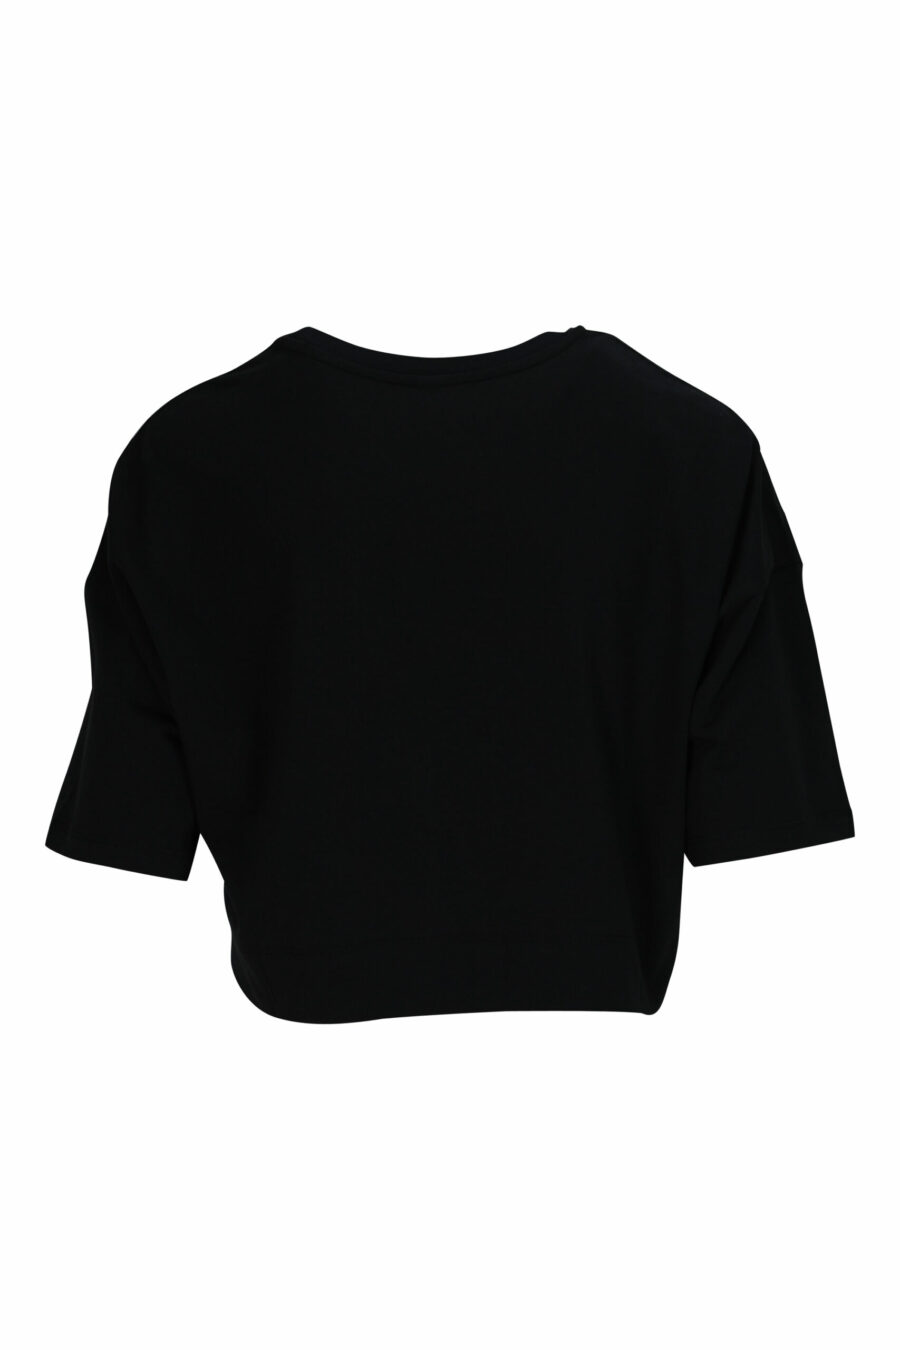 Schwarzes kurzes T-Shirt mit weißem Schulterband-Logo - 667113696454 1 skaliert